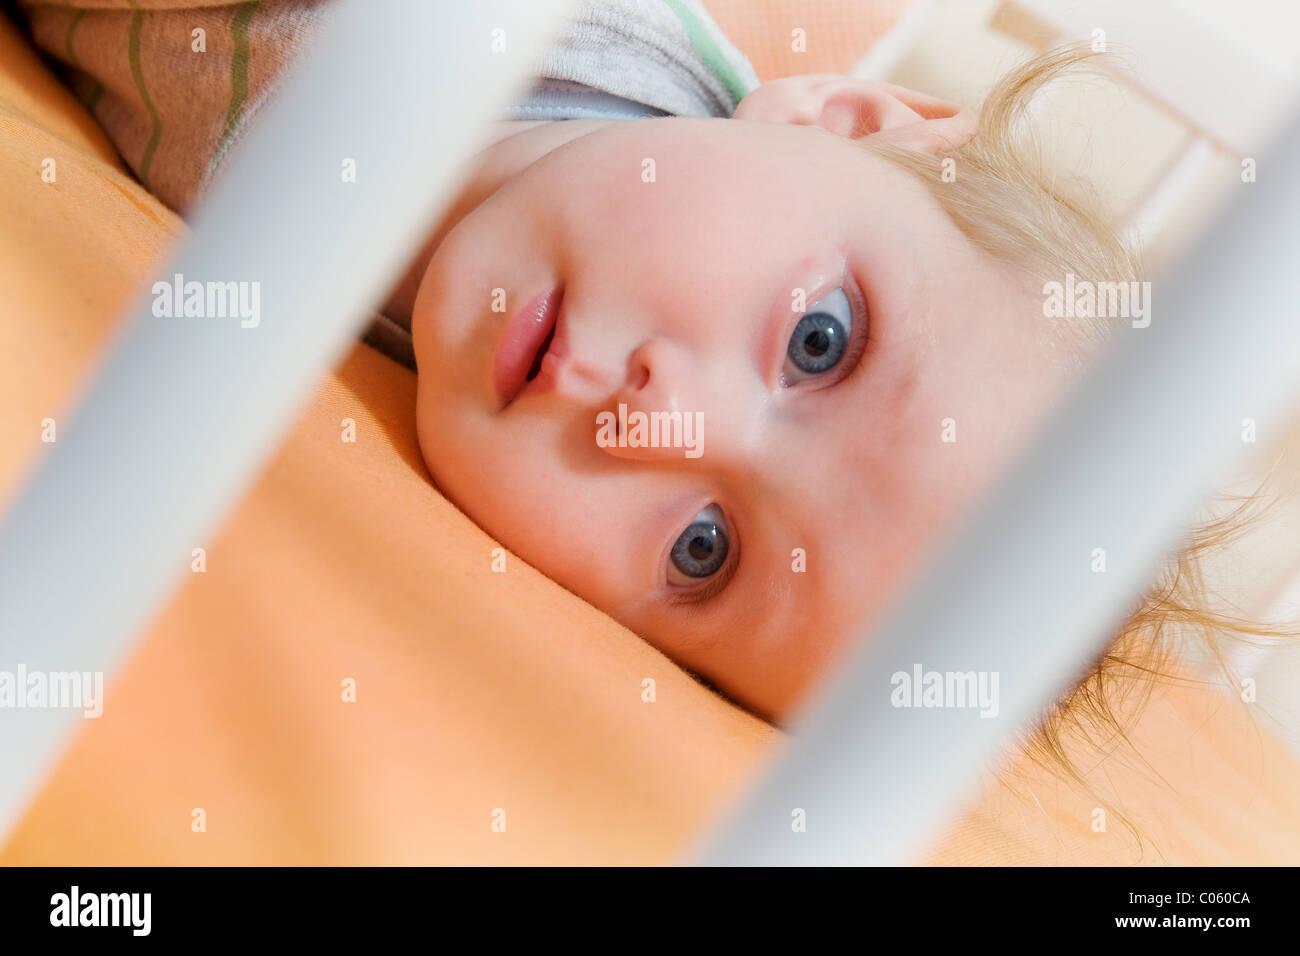 Baby Stock Photo